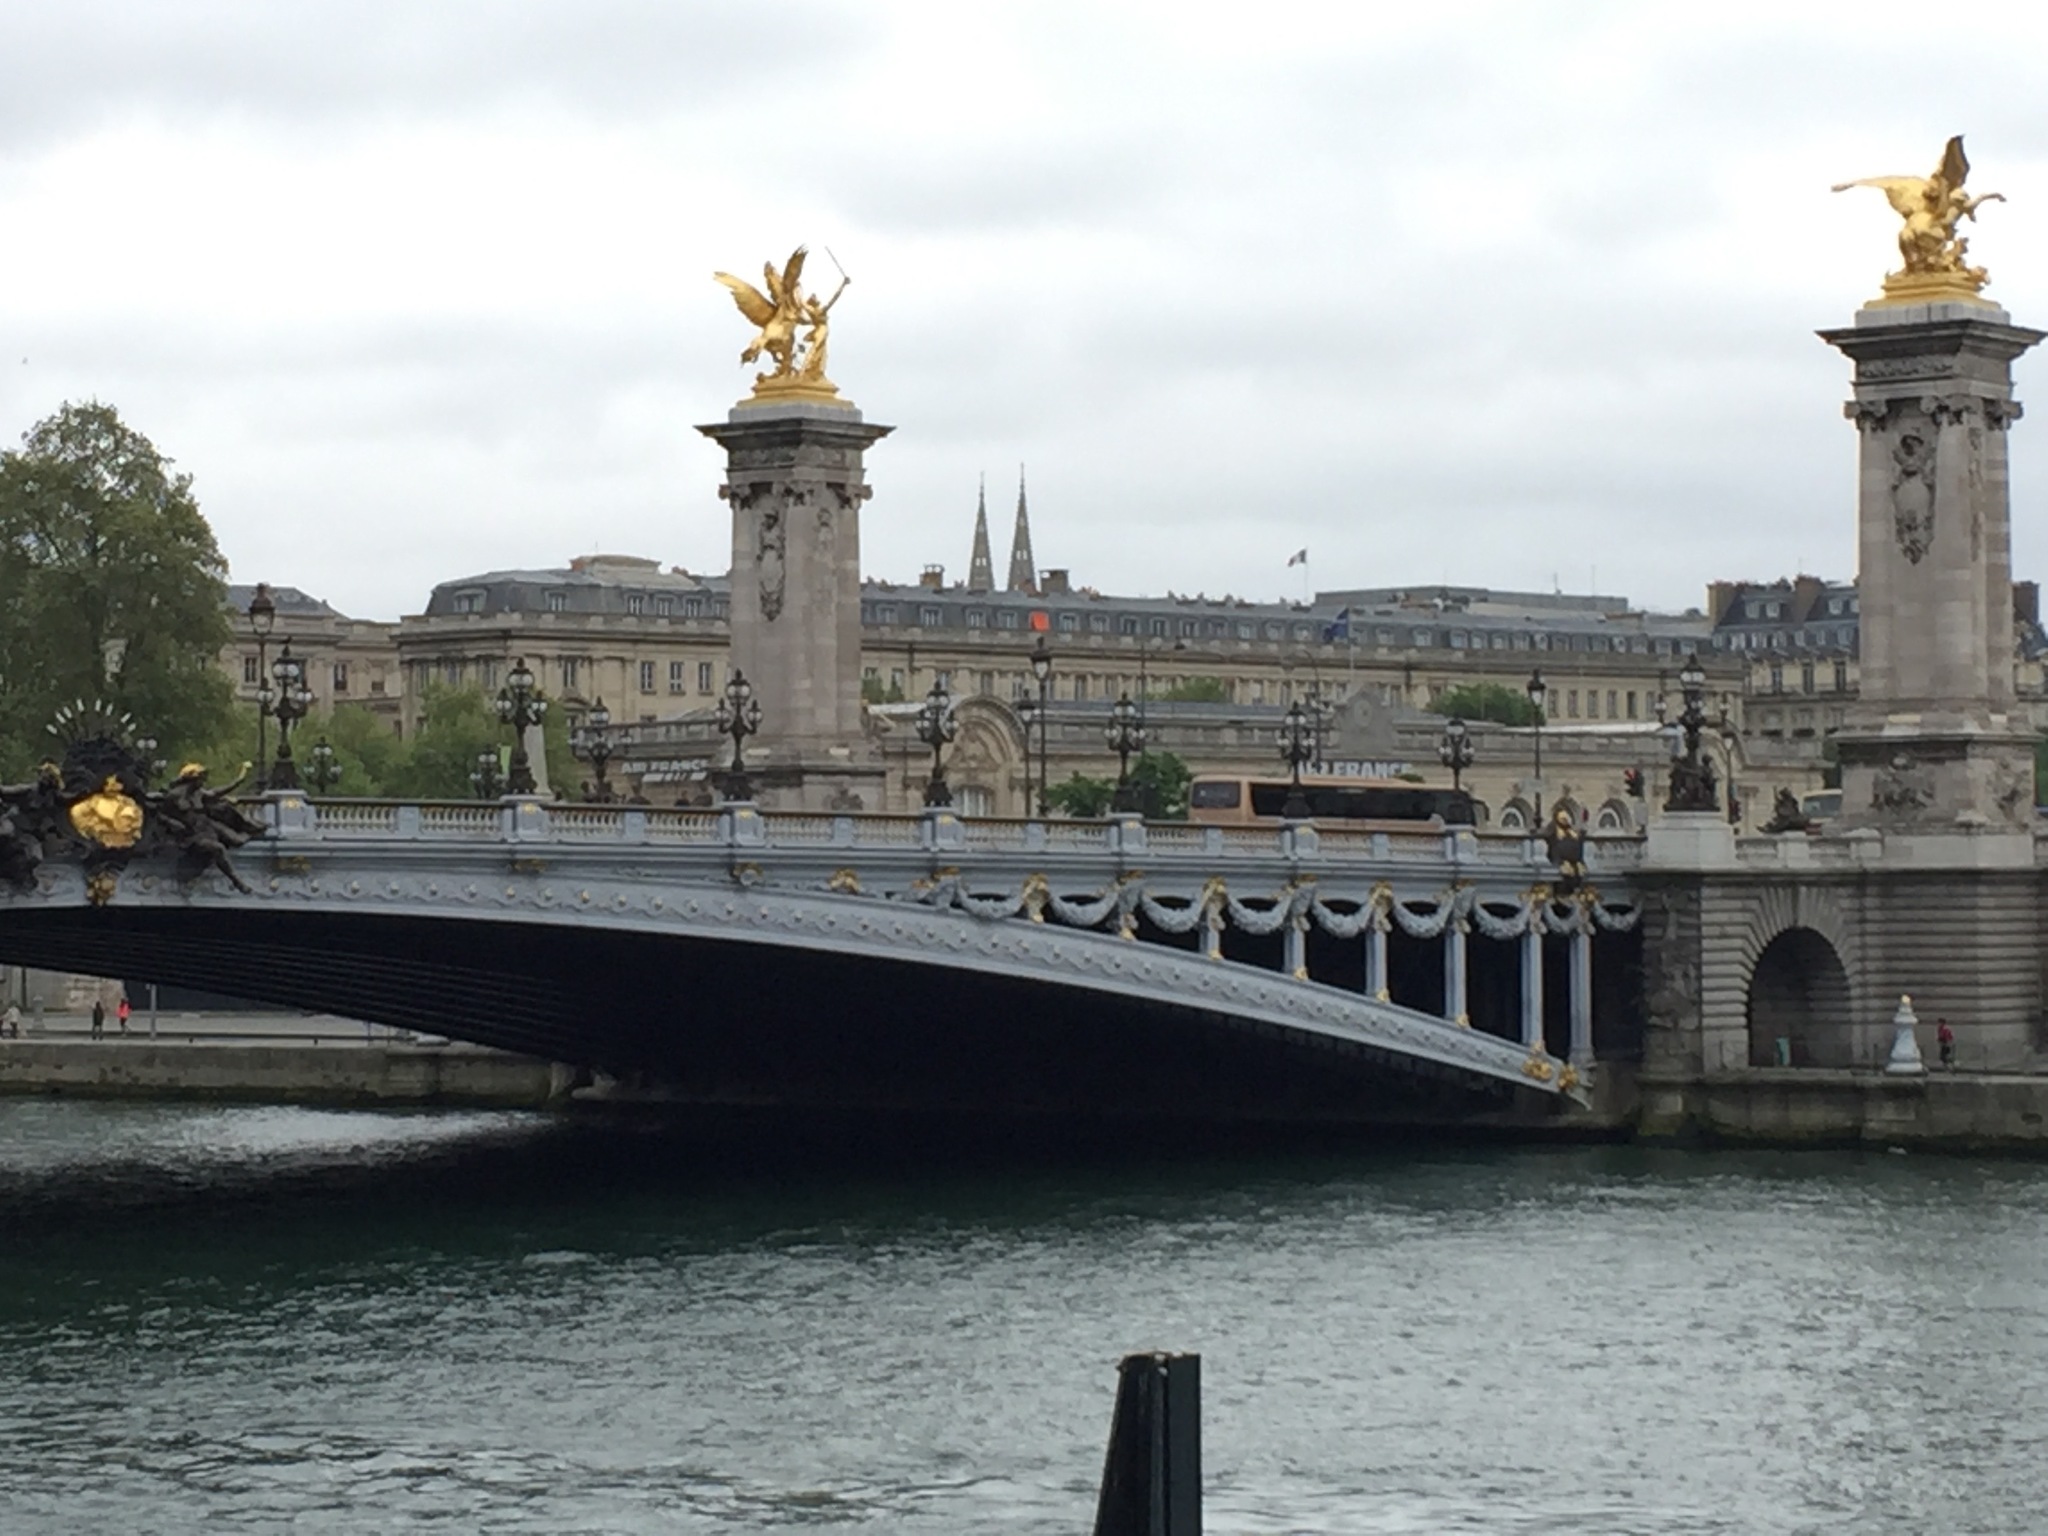 Puente de Alejandro III